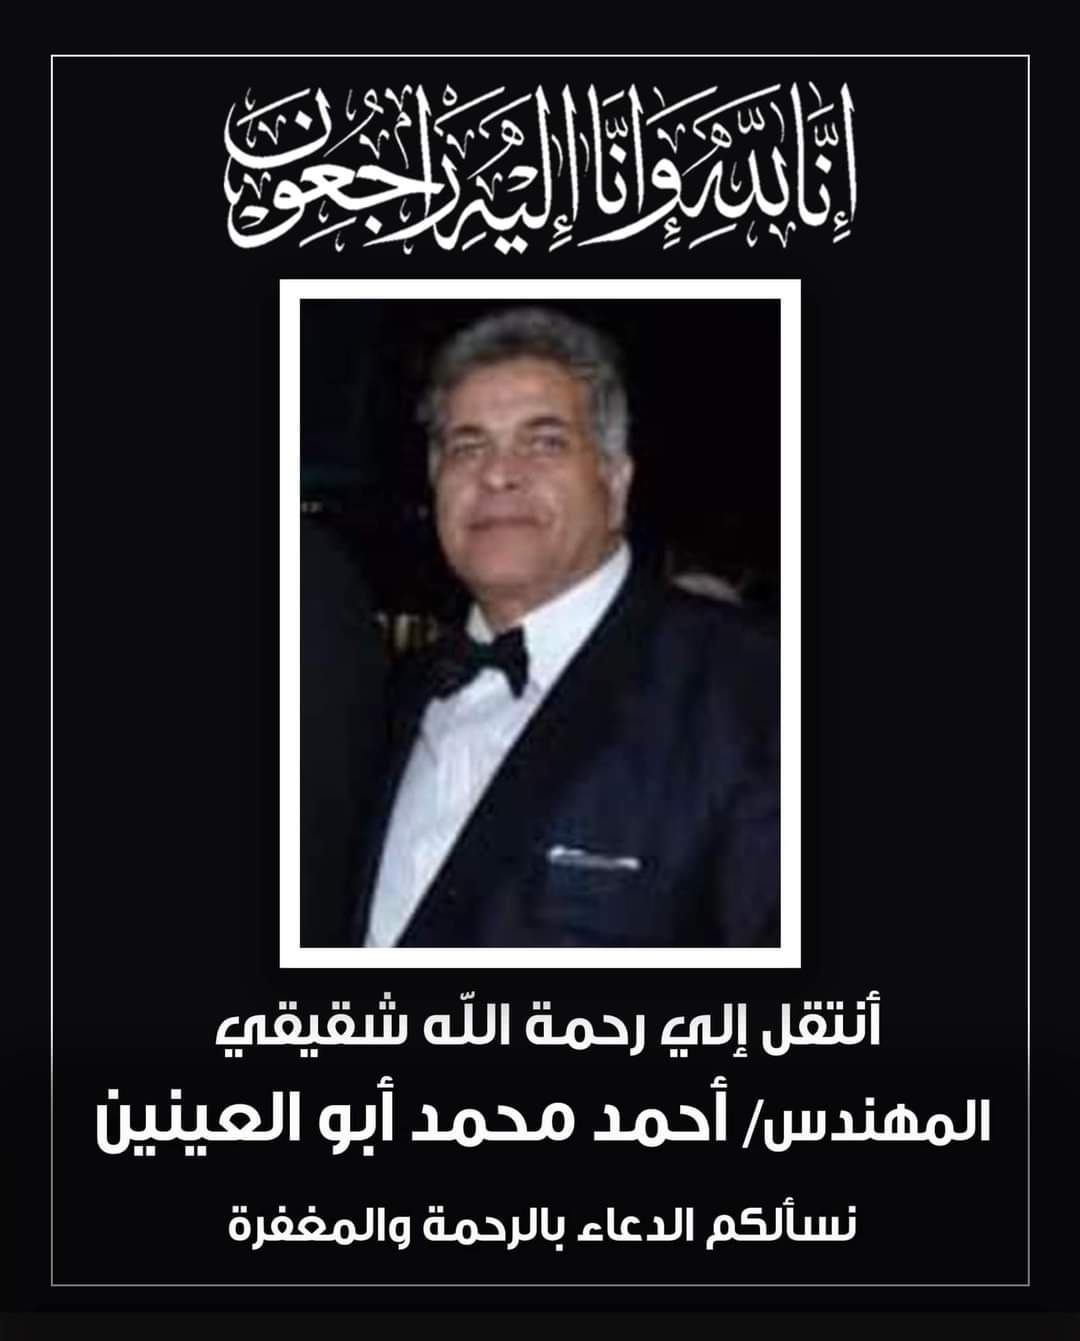 وفاة المهندس احمد محمد ابو العينين